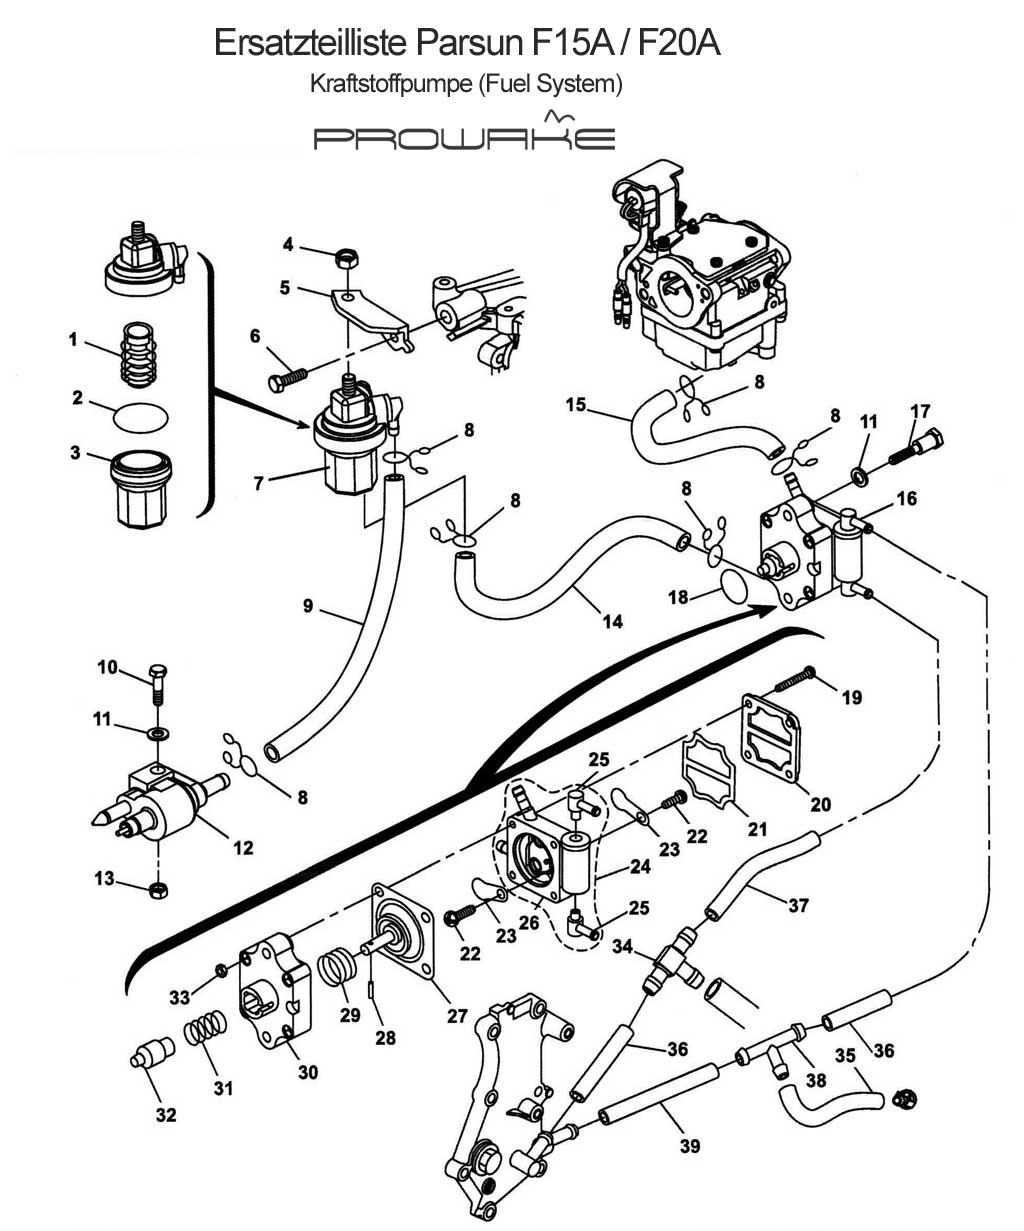 Parsun F15 (A) Ersatzteile / Spare Parts: Kraftstoffsystem